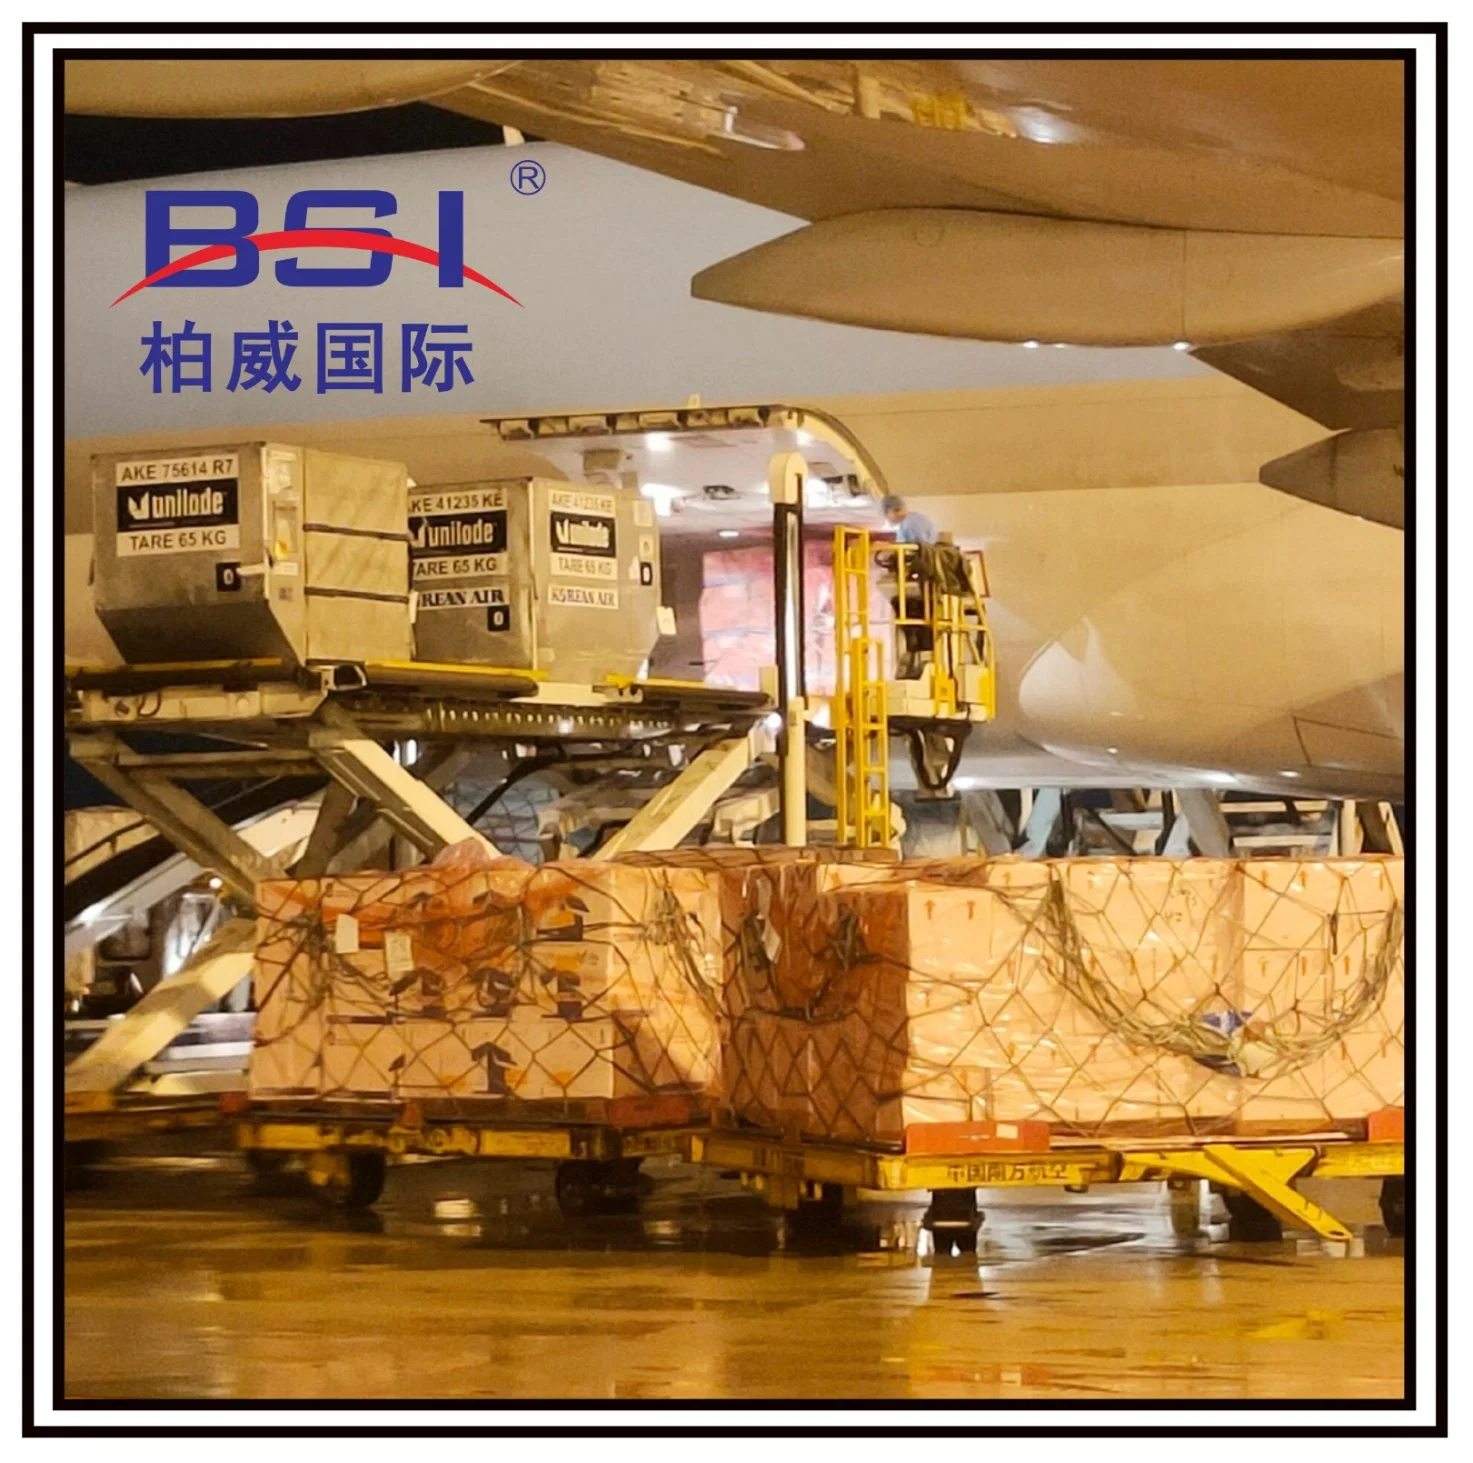 1688 Transporte aéreo/marítimo de carga rápida e barata Logística Transporte de mercadorias e cargas Serviços de encaminhamento da China para os Países Baixos, Paris, Nigéria, The United S.